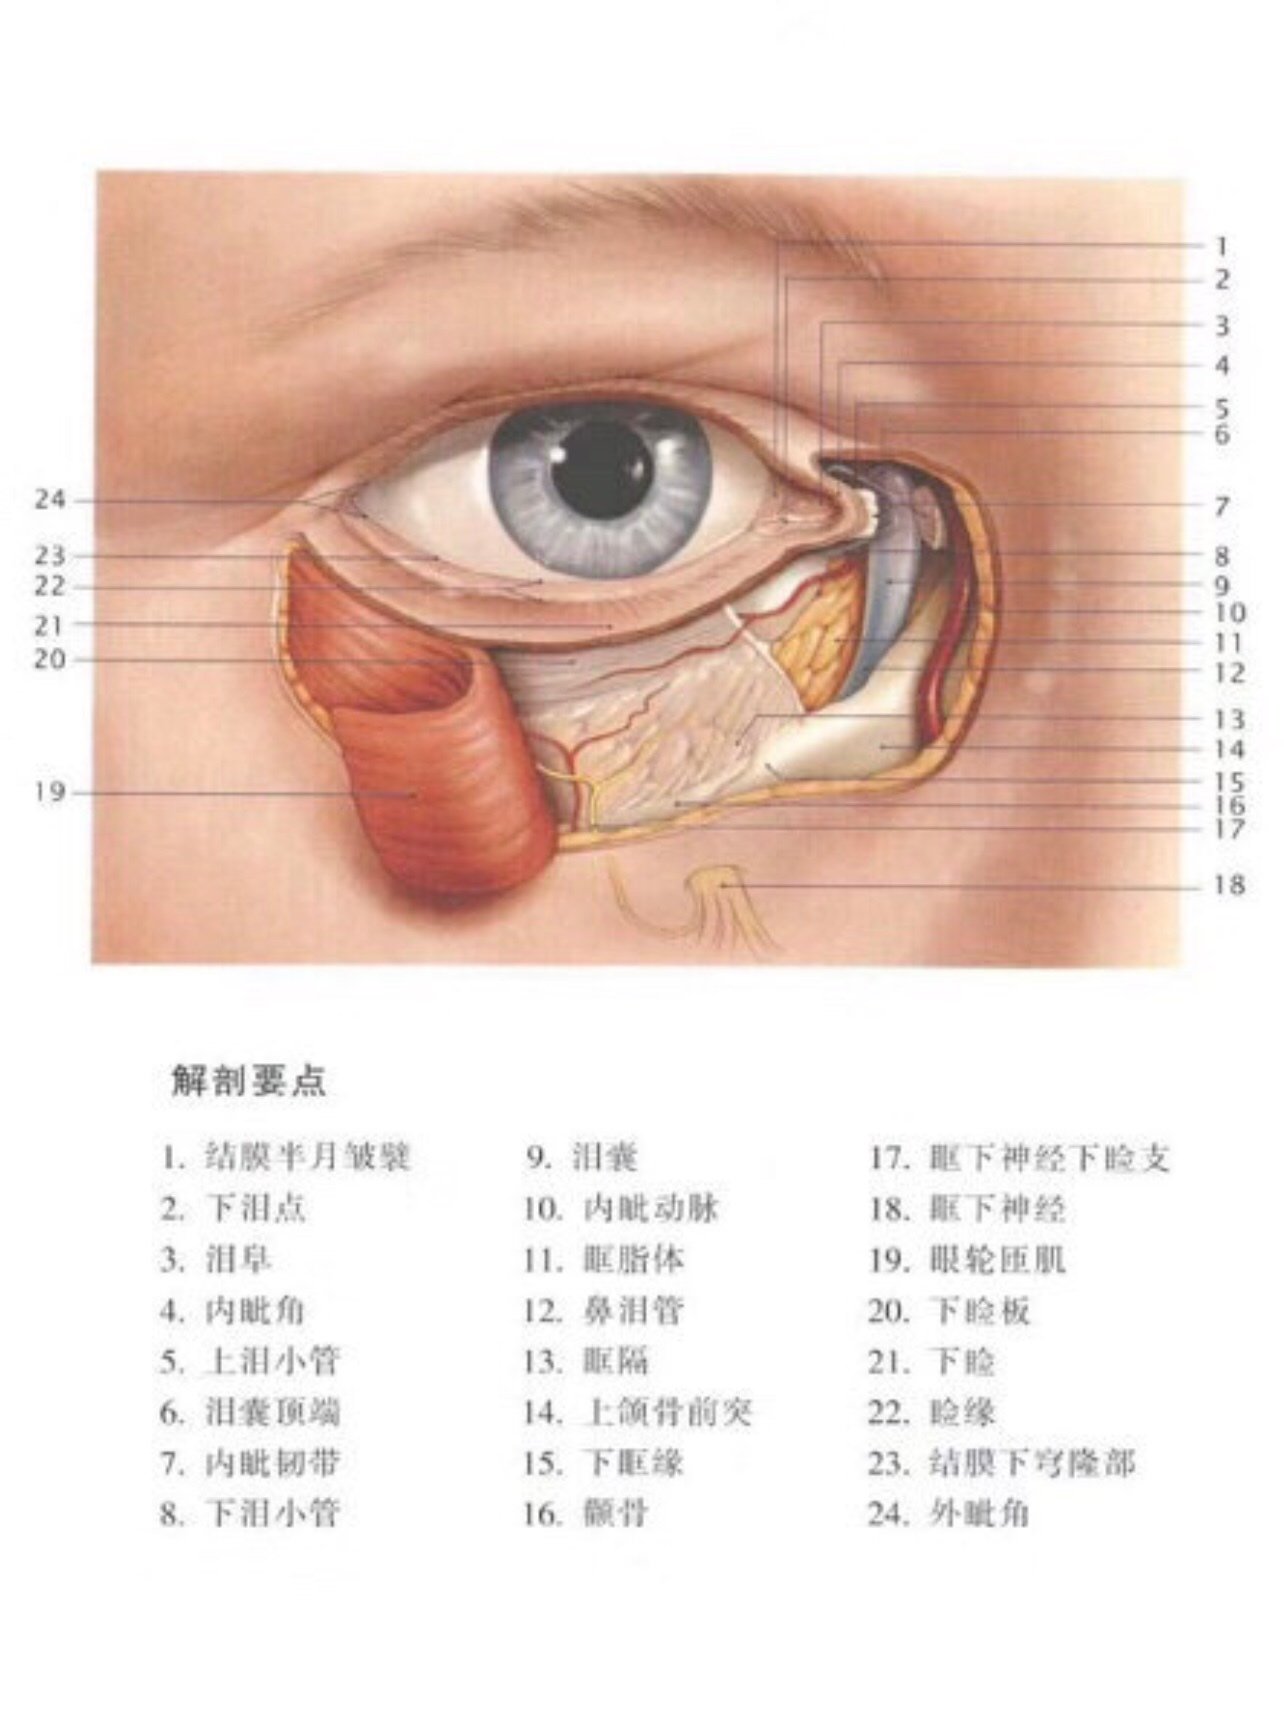 【眼部肌肉受损会导致眼睛无法闭合】其他部位的眼轮匝